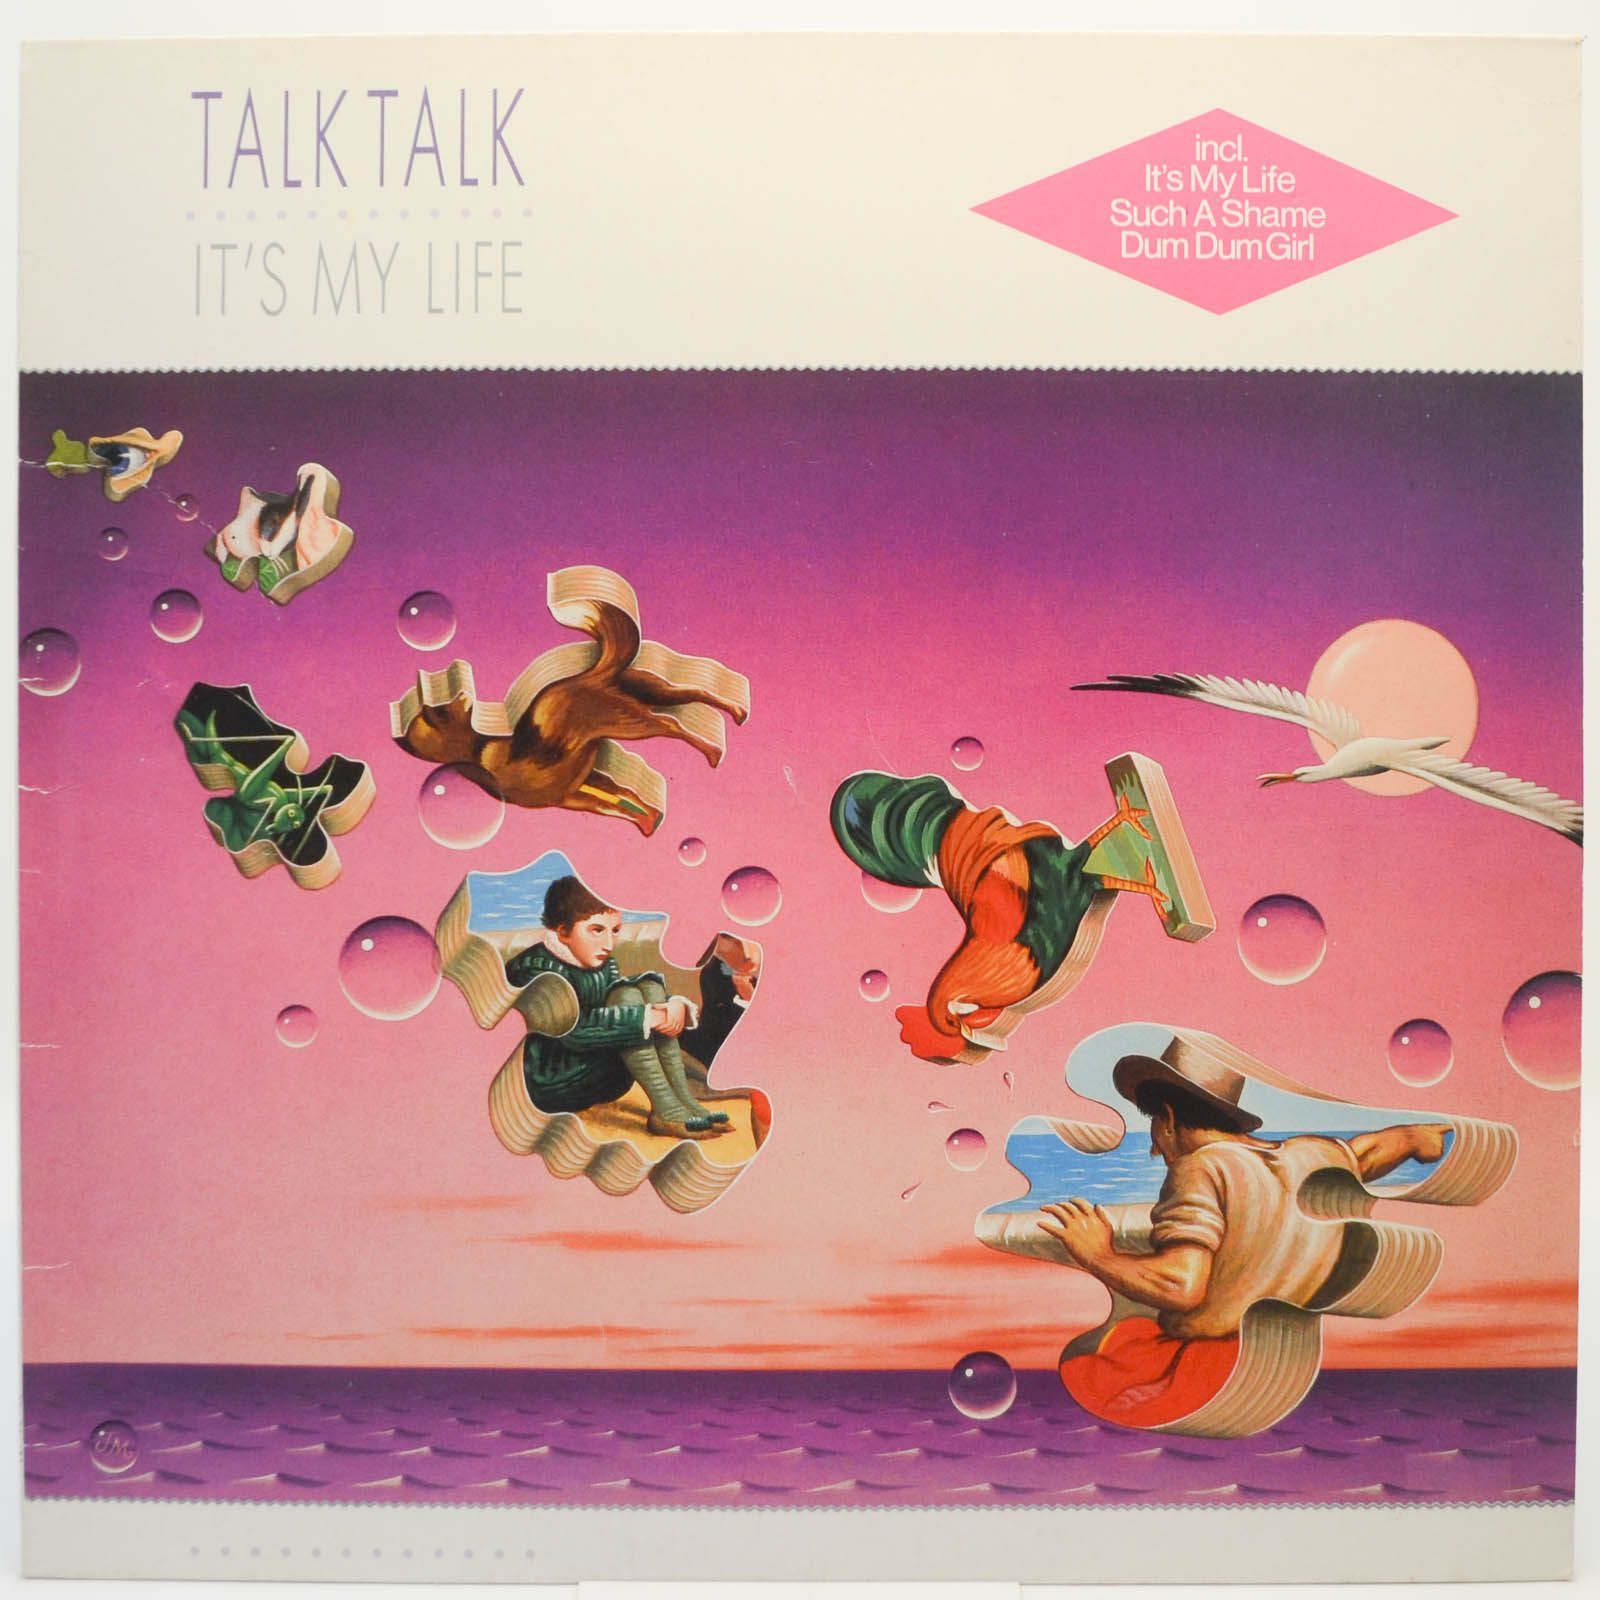 Talk Talk — It's My Life, 1984